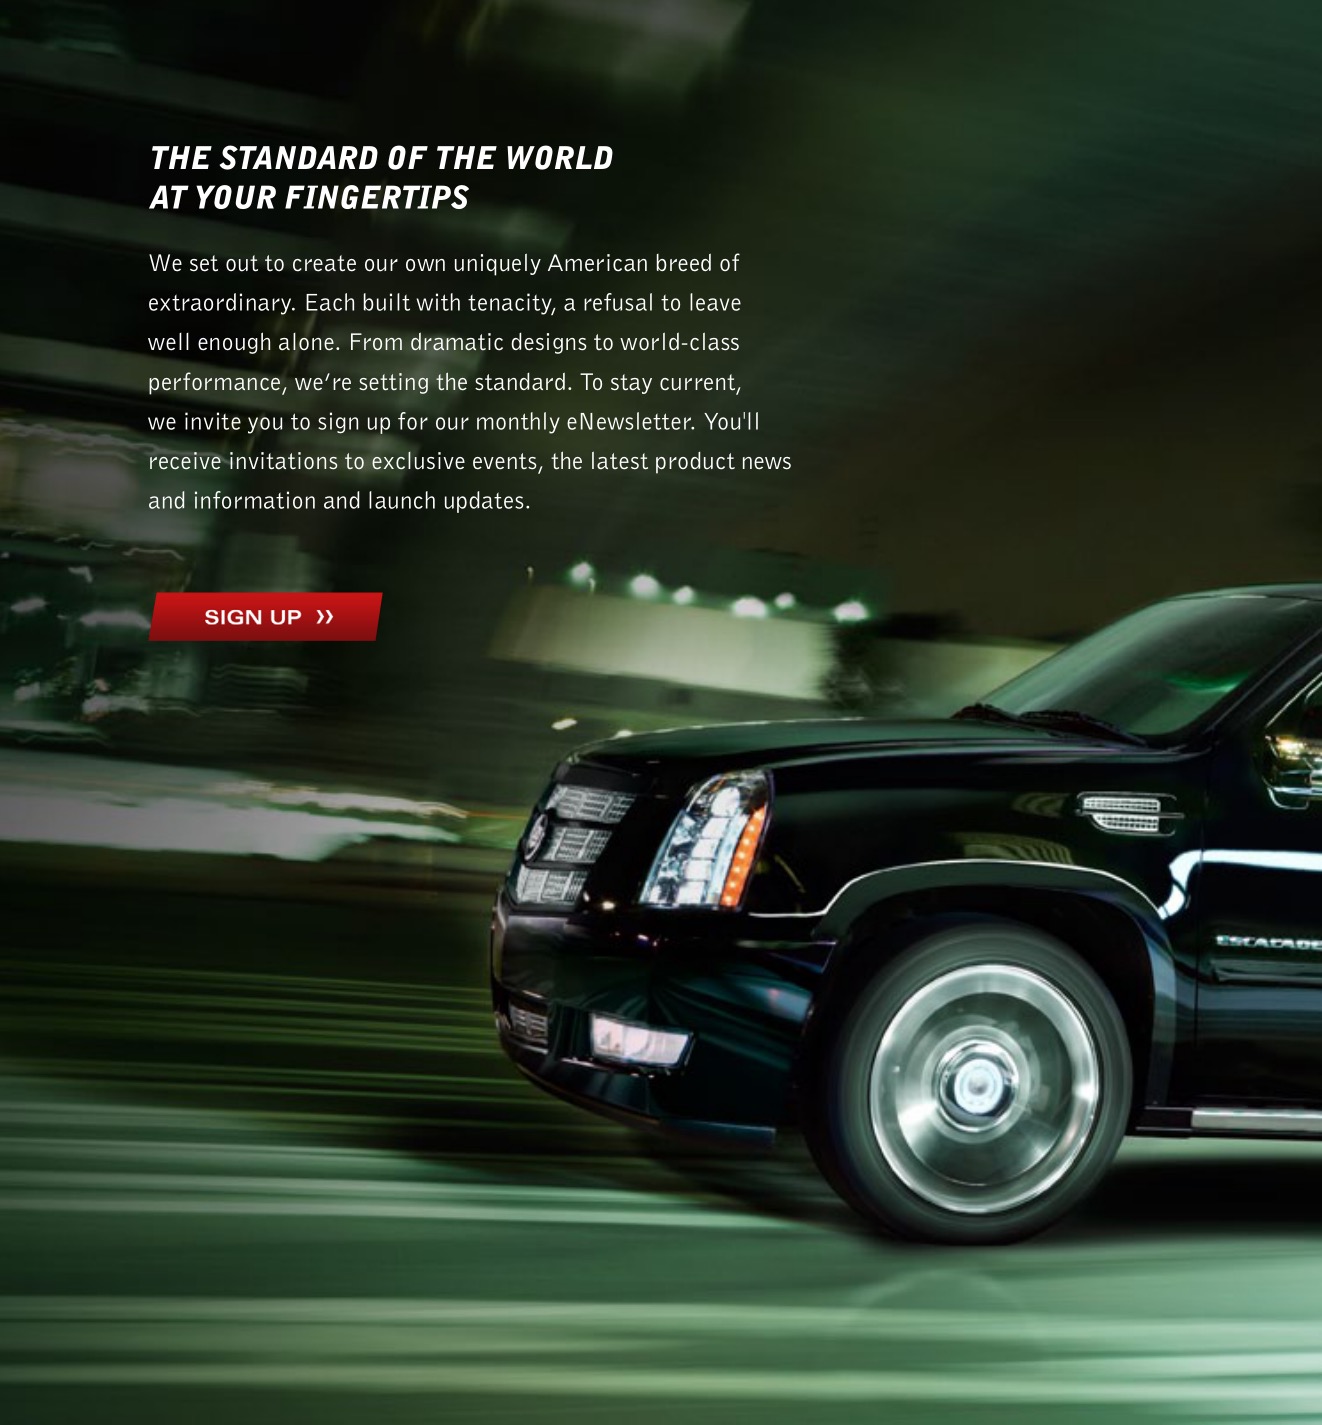 2013 Cadillac Escalade Brochure Page 4